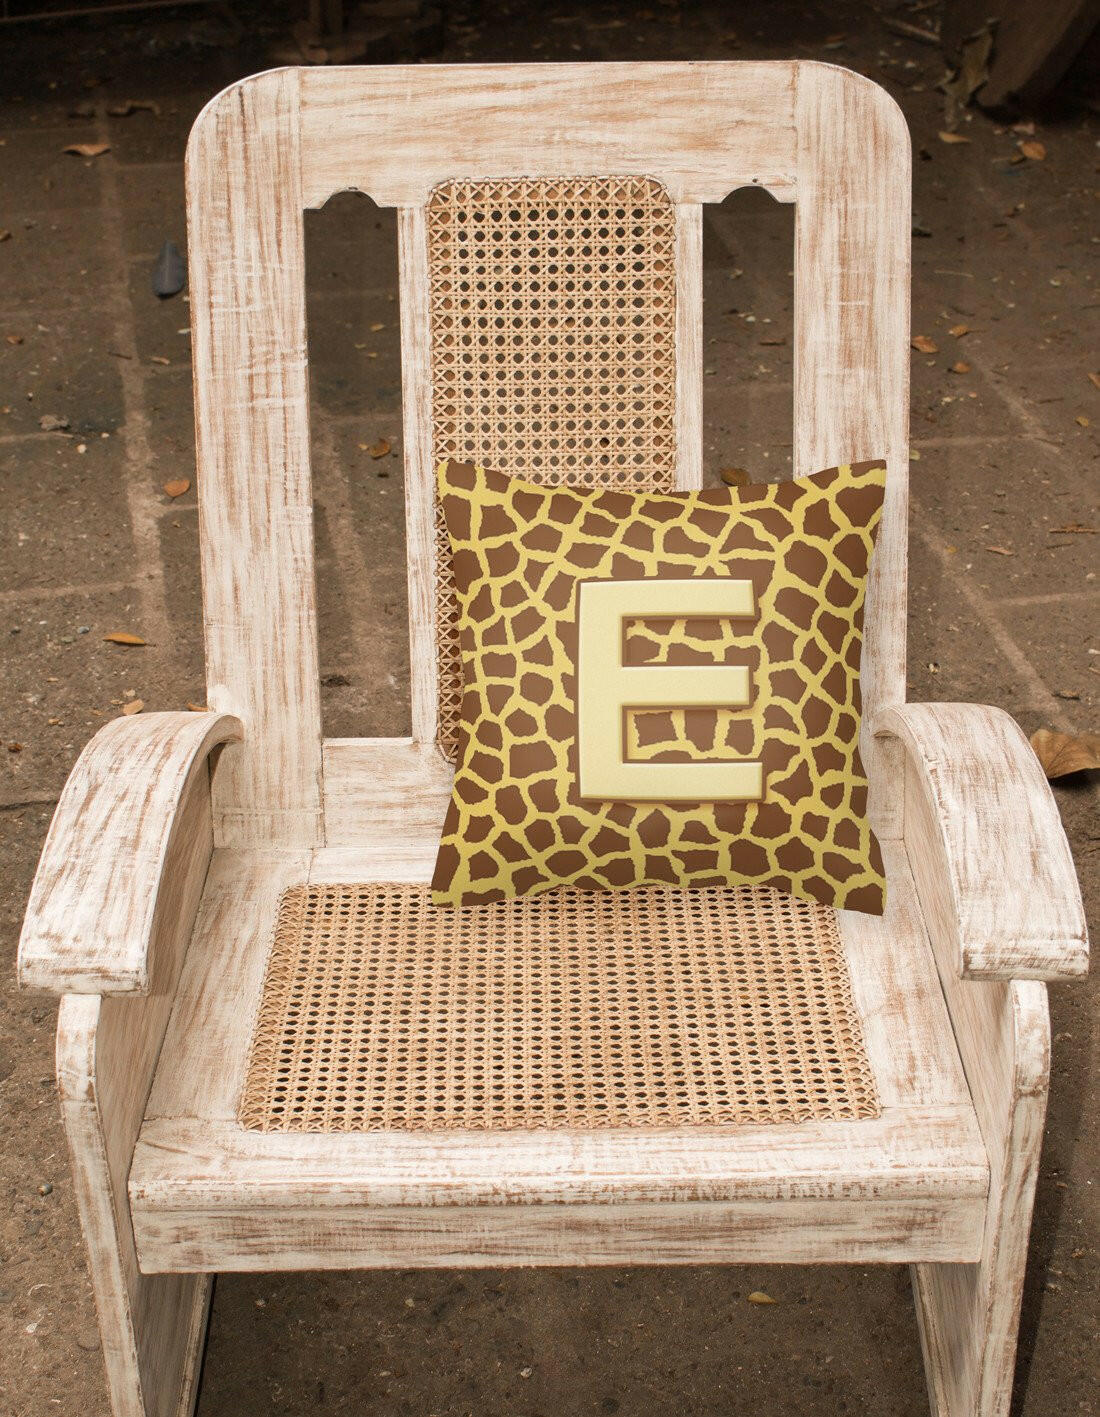 Monogram Initial E Giraffe Decorative   Canvas Fabric Pillow CJ1025 - the-store.com